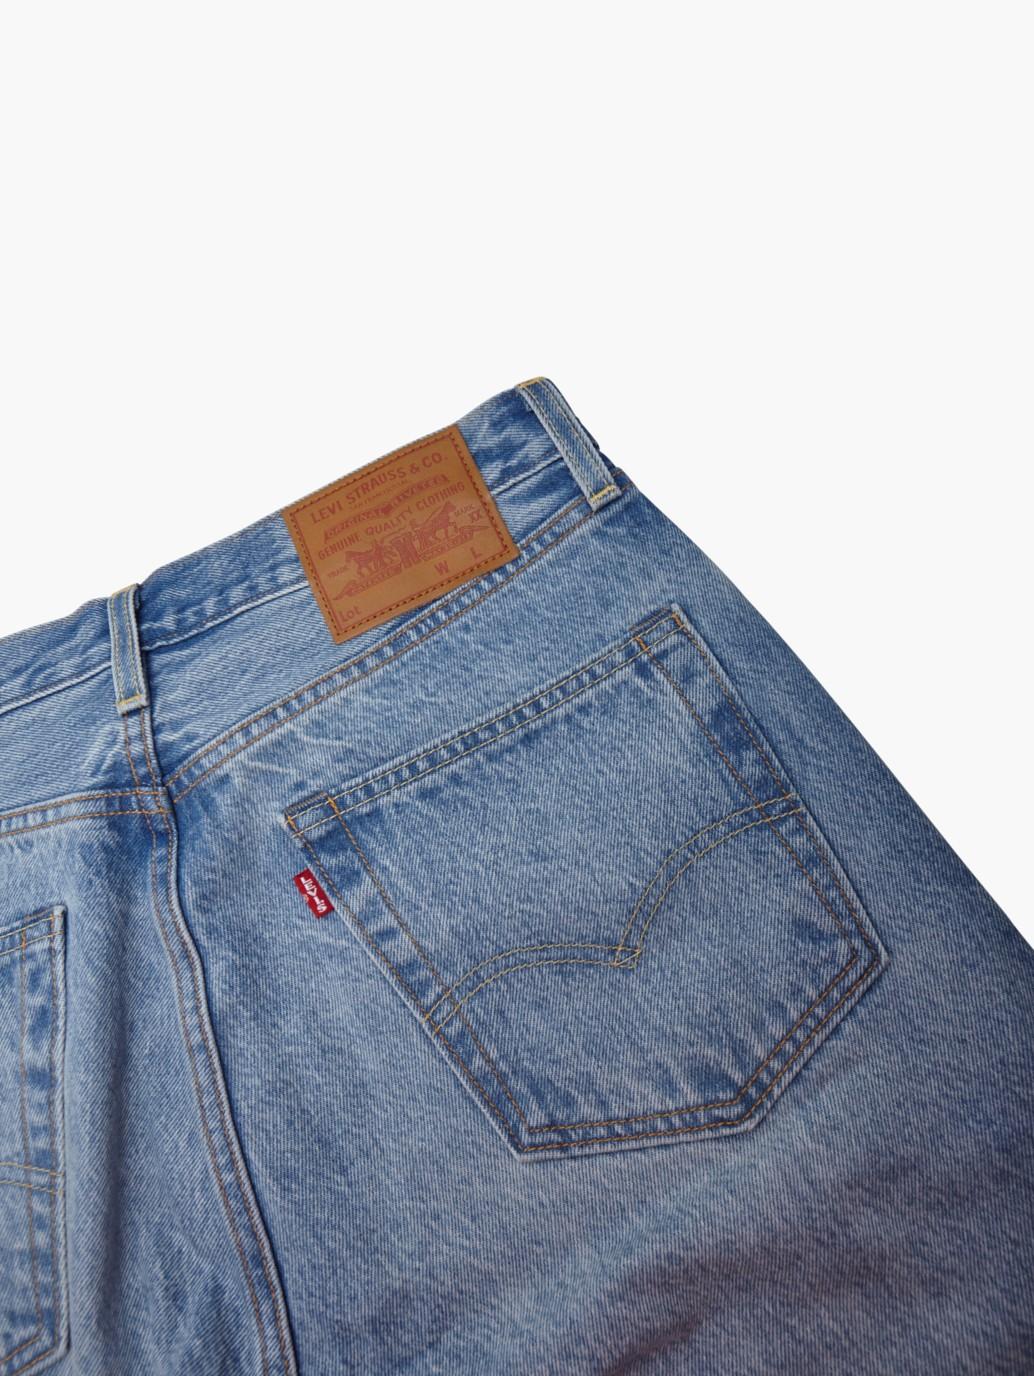 levis singapore mens 501 54 jeans A46770006 18 Details